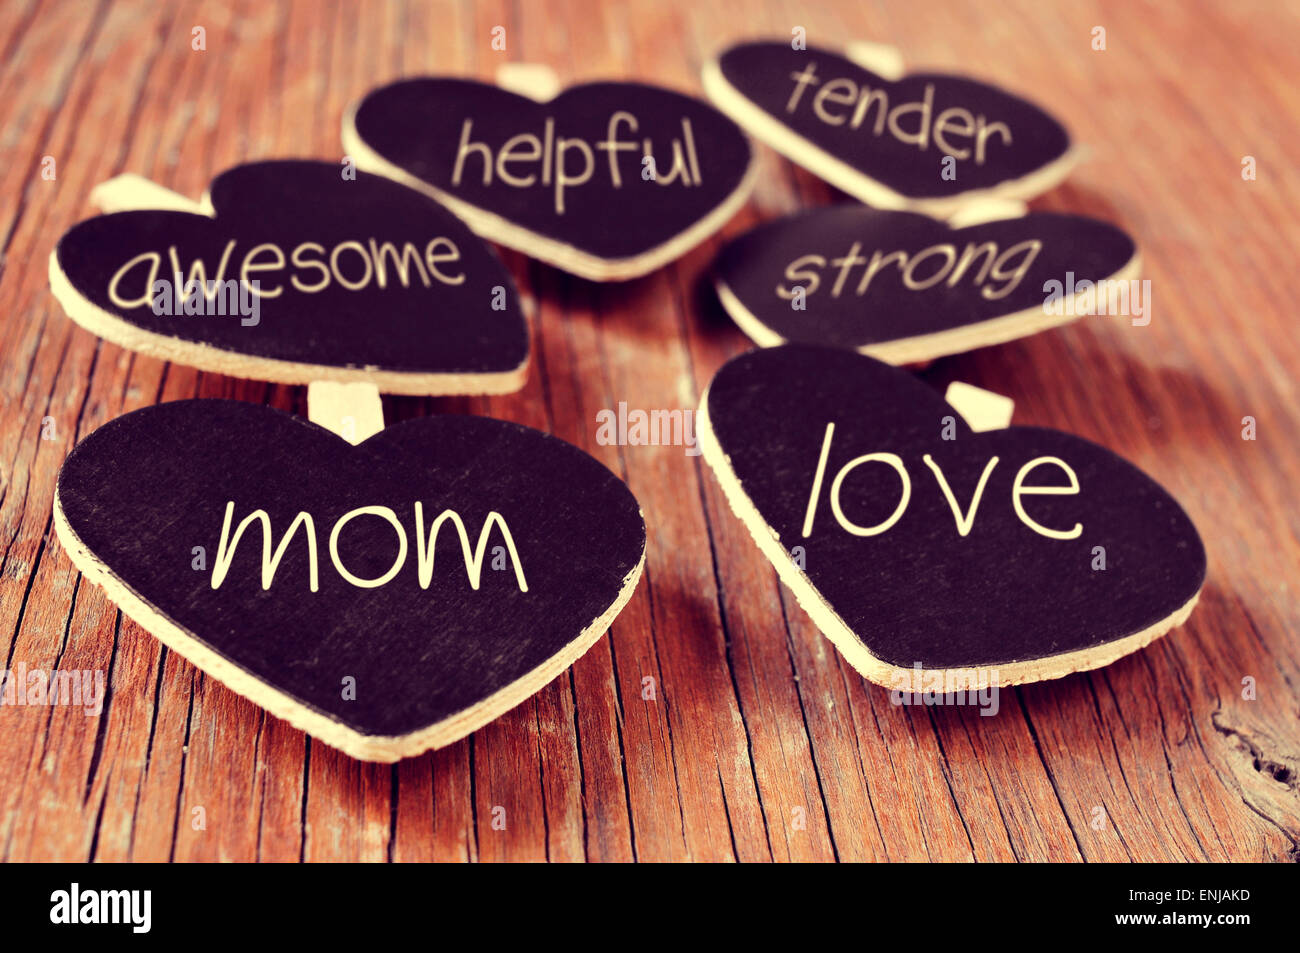 Algunas pizarras en forma de corazón con conceptos referidos a una buena mamá escrito en ellos, tales como el amor, servicial, increíble, tierno o s Foto de stock